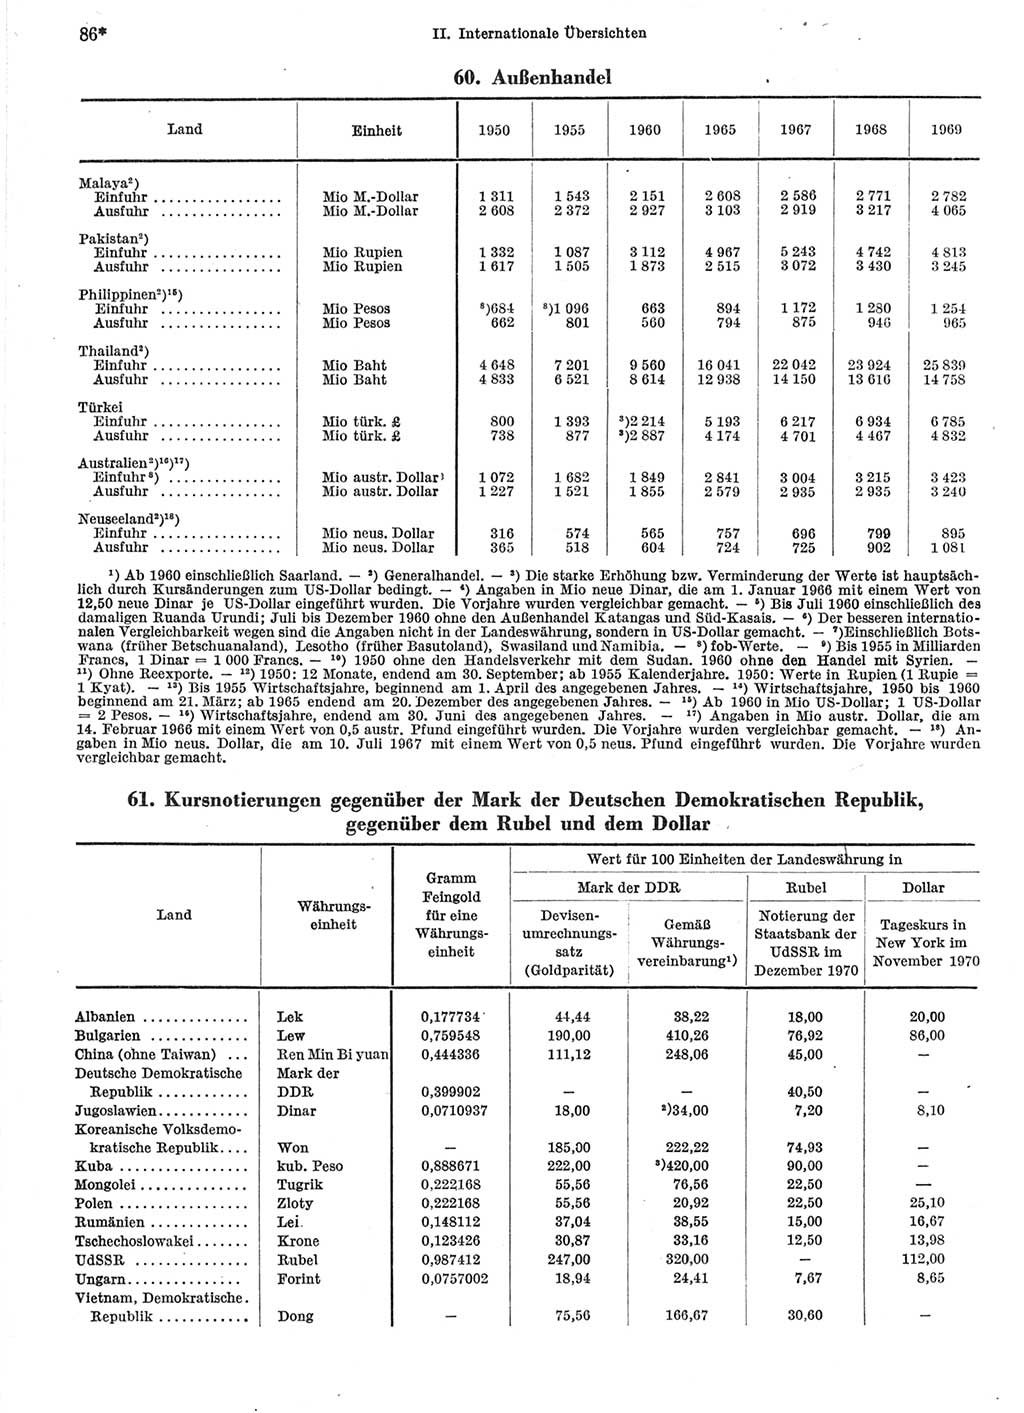 Statistisches Jahrbuch der Deutschen Demokratischen Republik (DDR) 1971, Seite 86 (Stat. Jb. DDR 1971, S. 86)